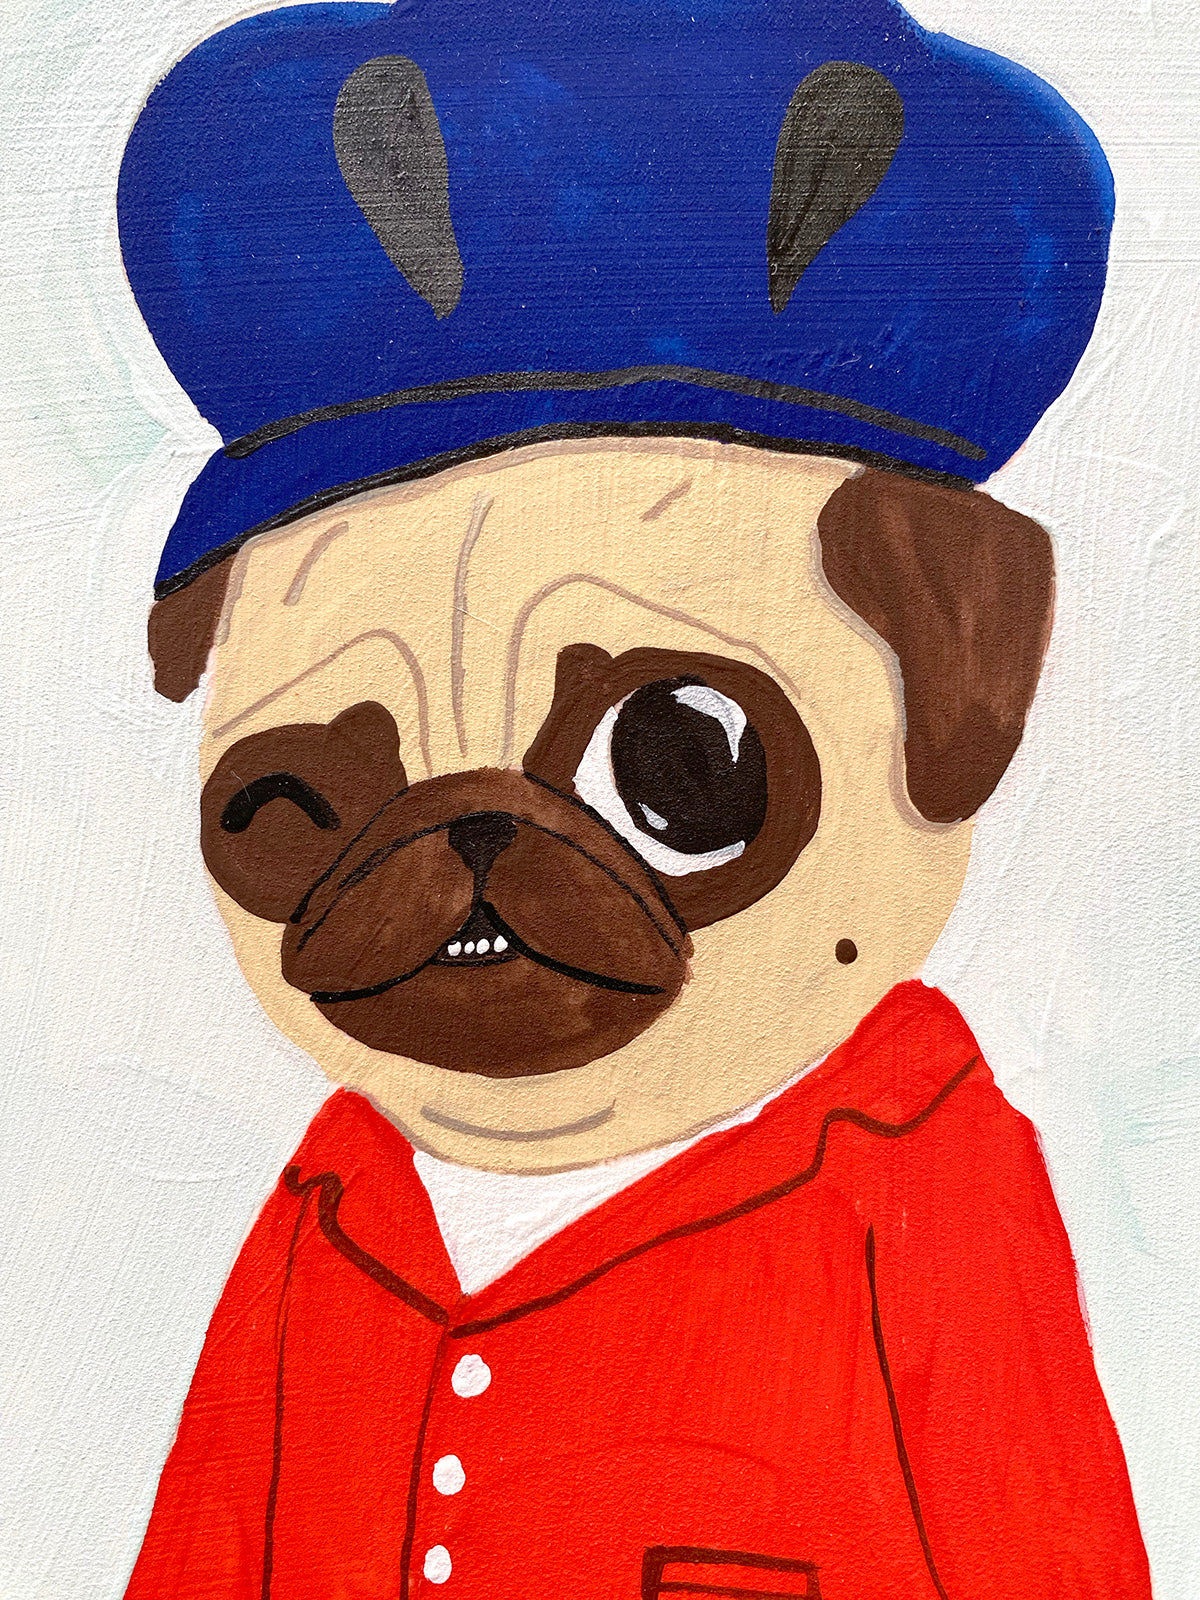 Lil' Cutie - Original Pug Painting